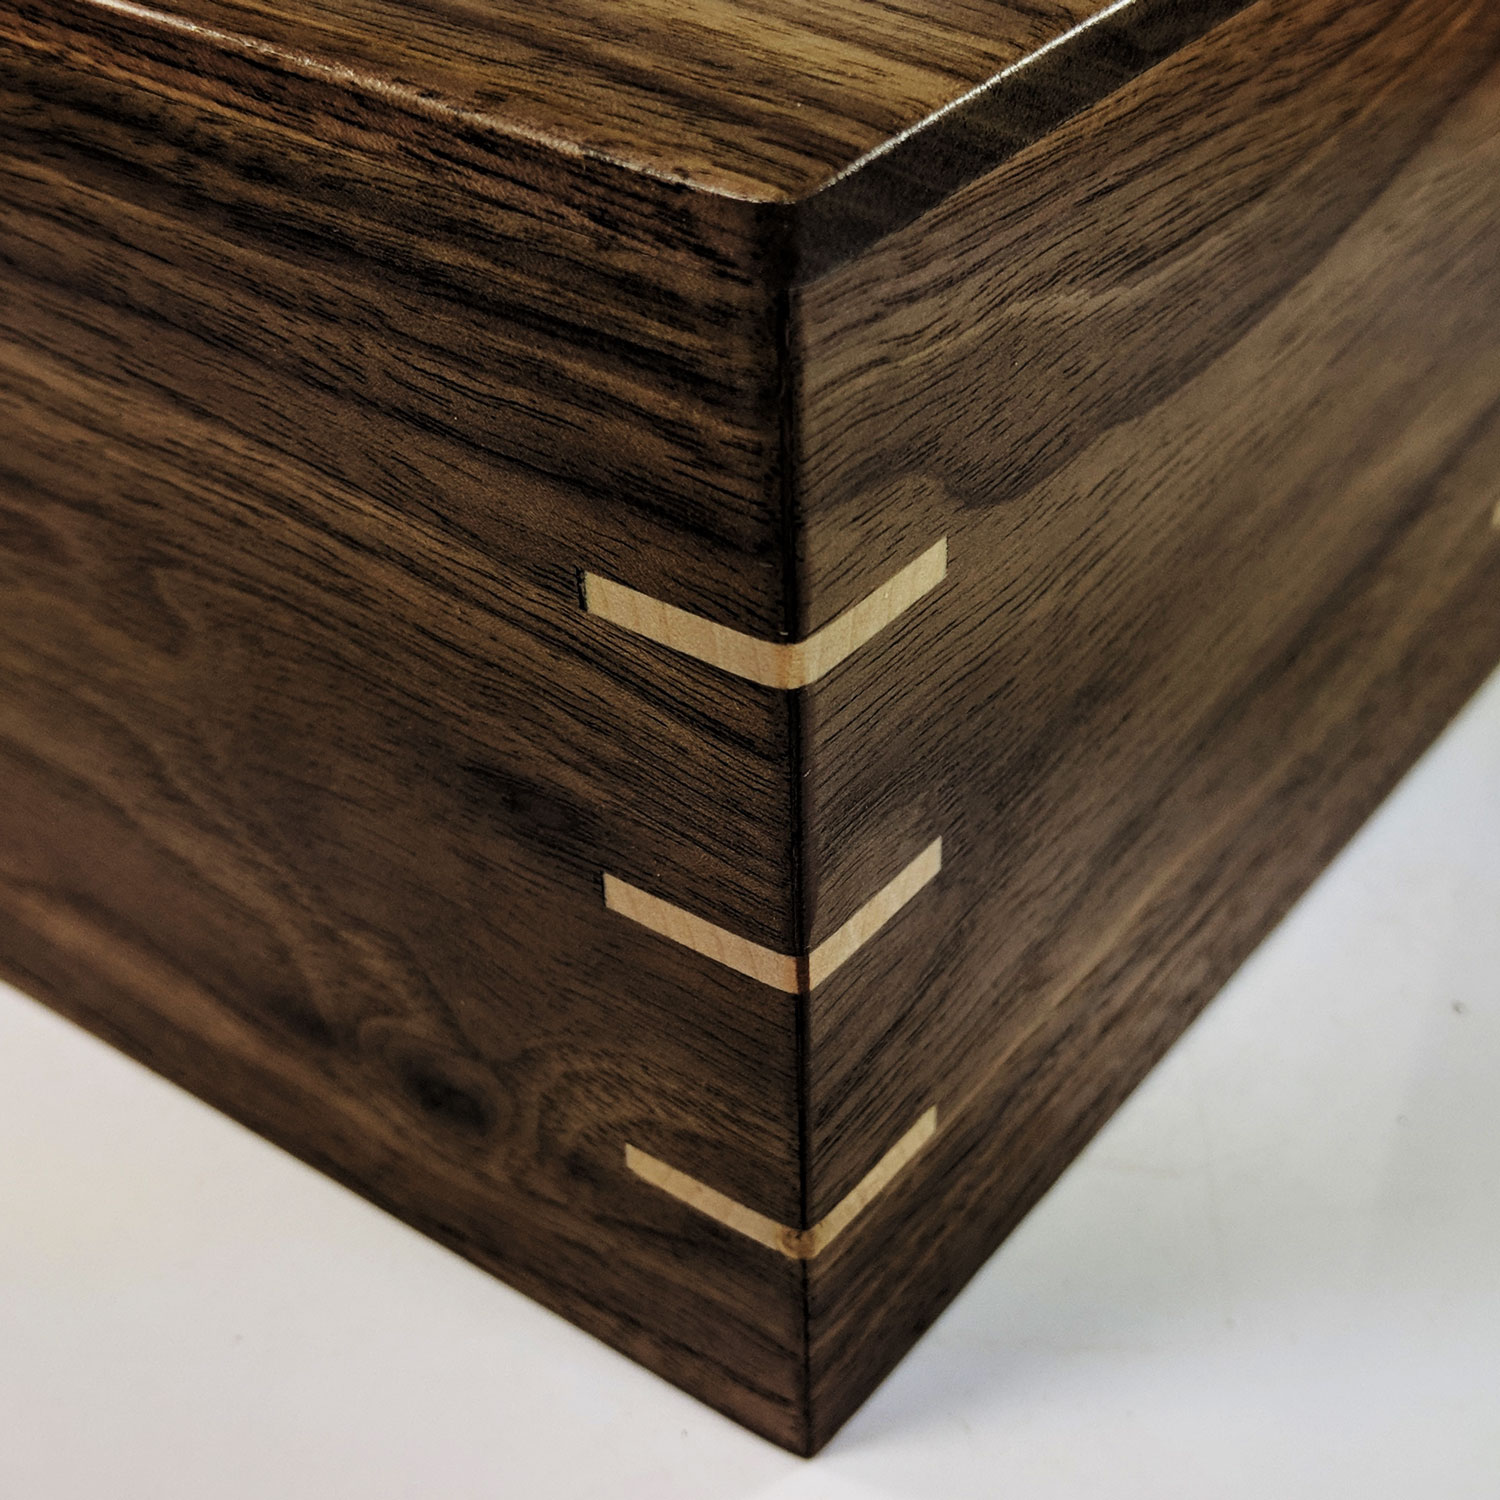 Wooden Storage Box – Walnut with White Oak Corner Splines